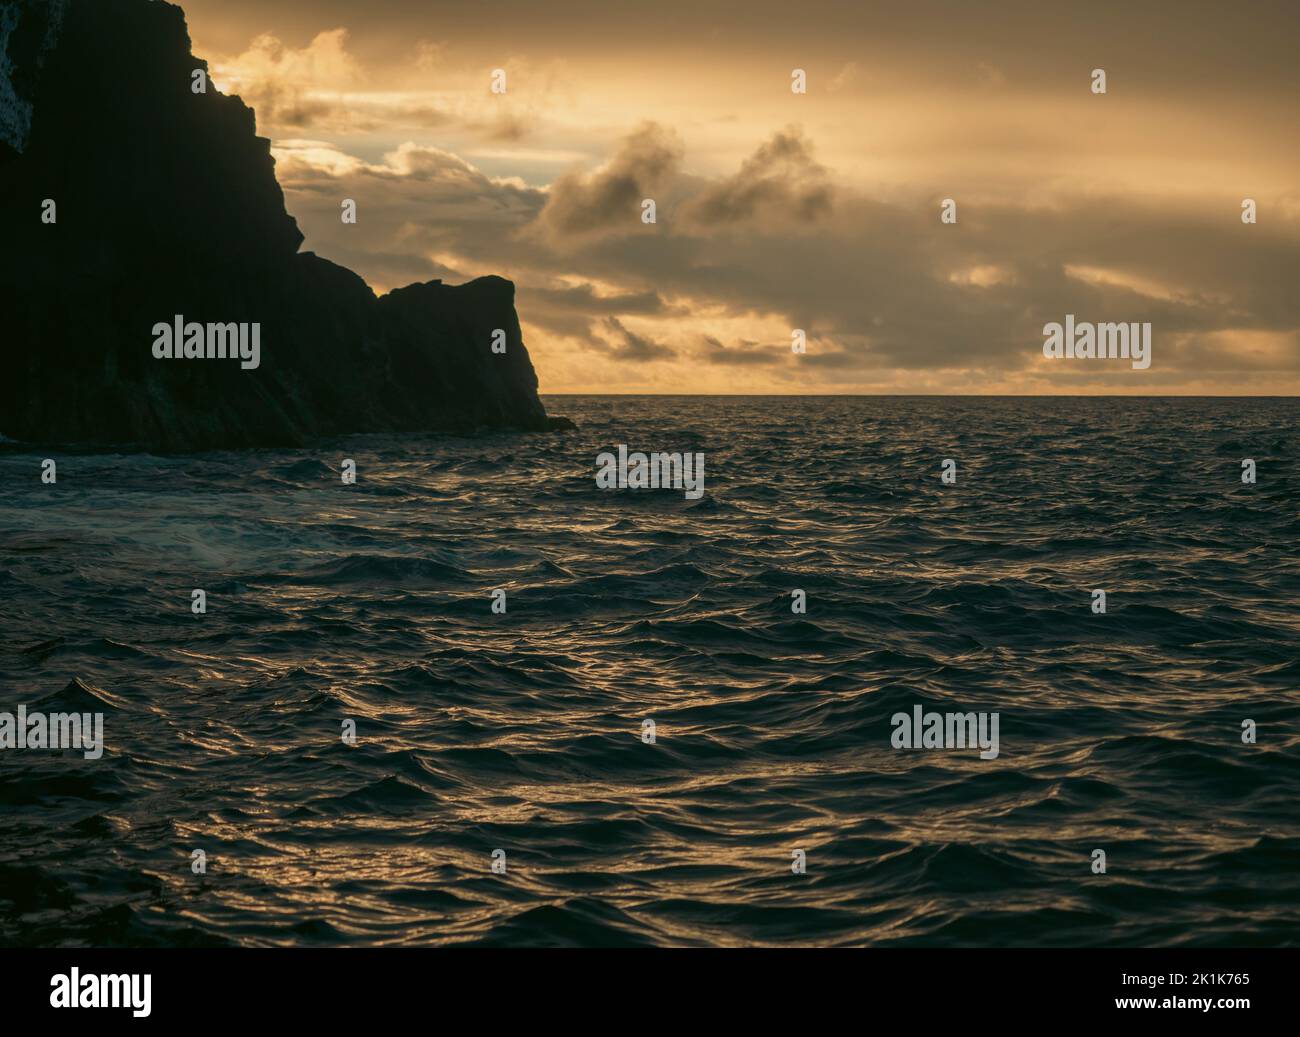 Puesta de sol sobre el océano Atlántico desde las islas portuguesas de las Azores. Una línea costera entrecortada durante la puesta de sol con afloramientos rocosos y una increíble puesta de sol. Foto de stock